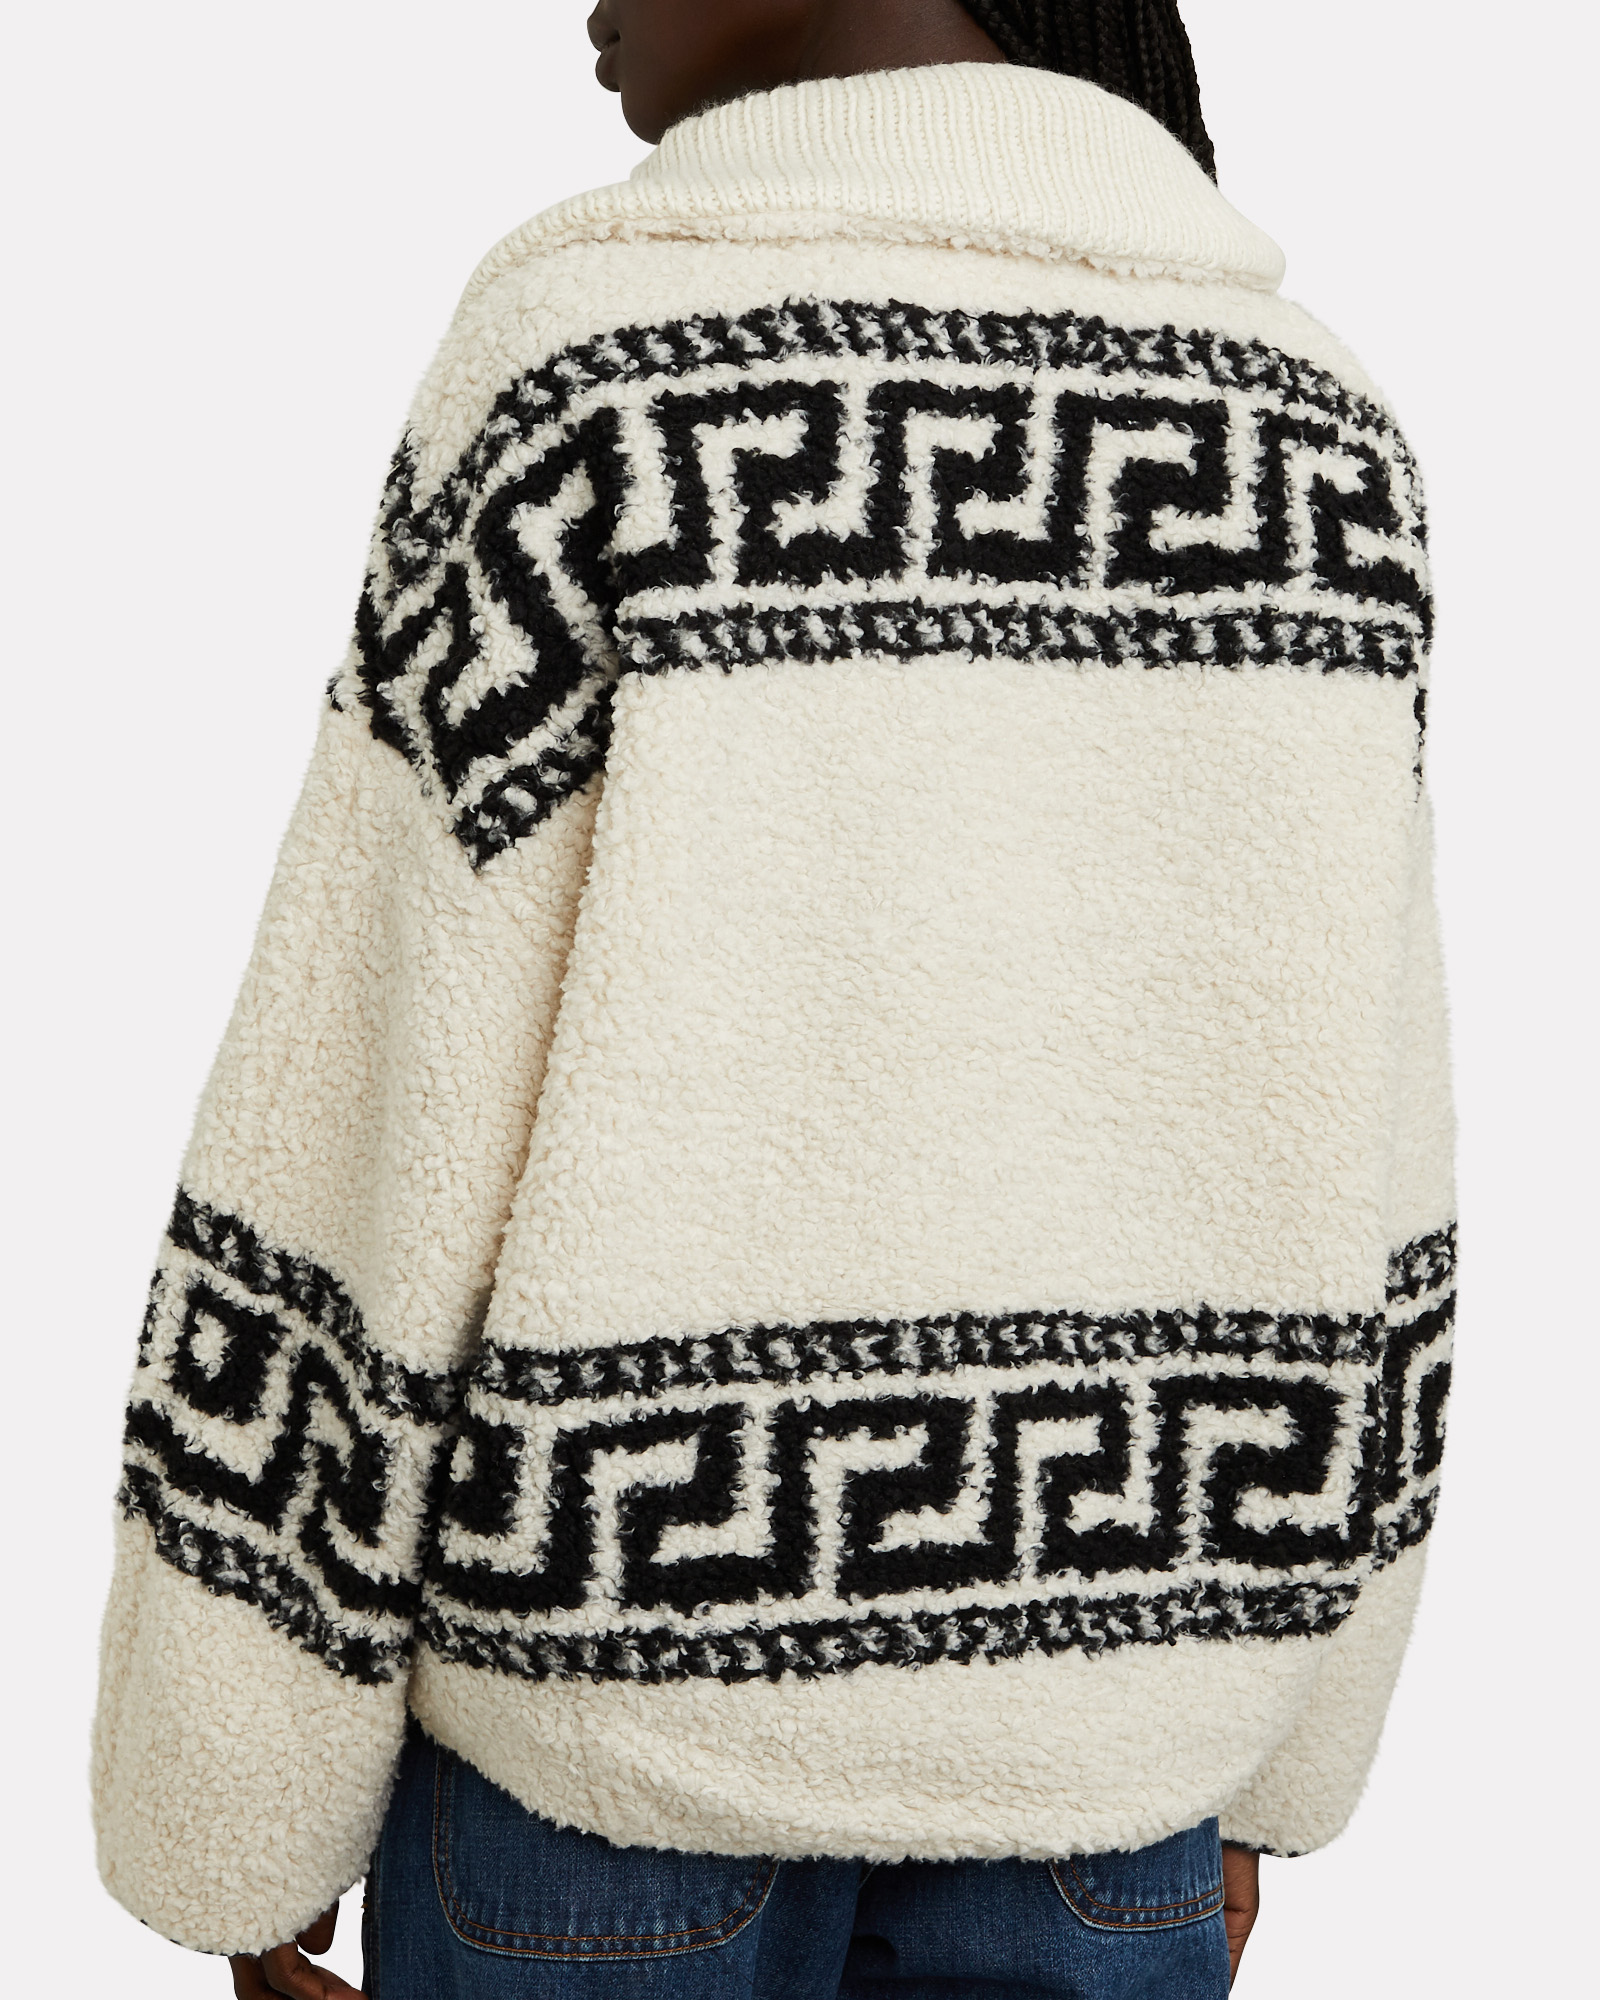 Garner Half-Zip Fleece Sweatshirt